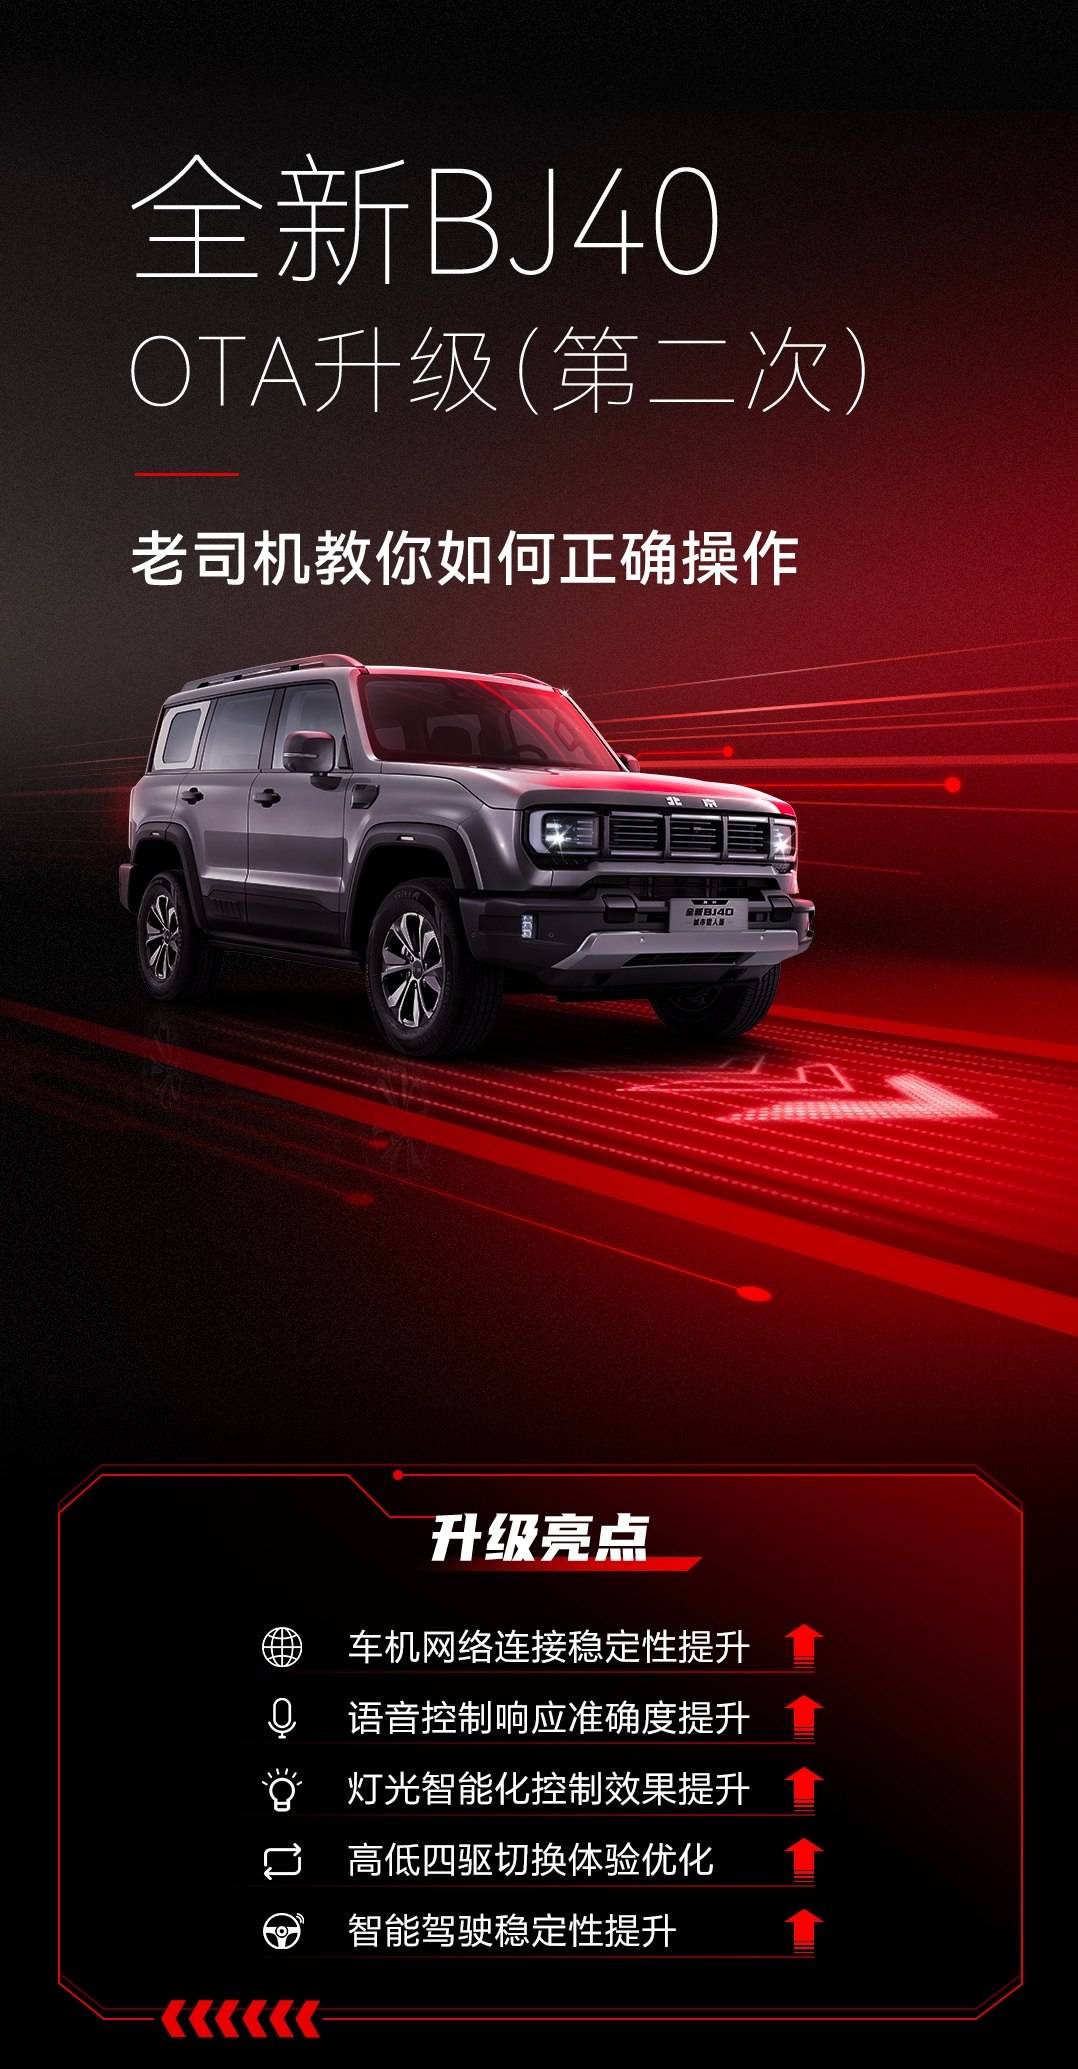 共计5项优化升级，全新Beijing BJ40开启第二次OTA升级_搜狐汽车_ Sohu.com。